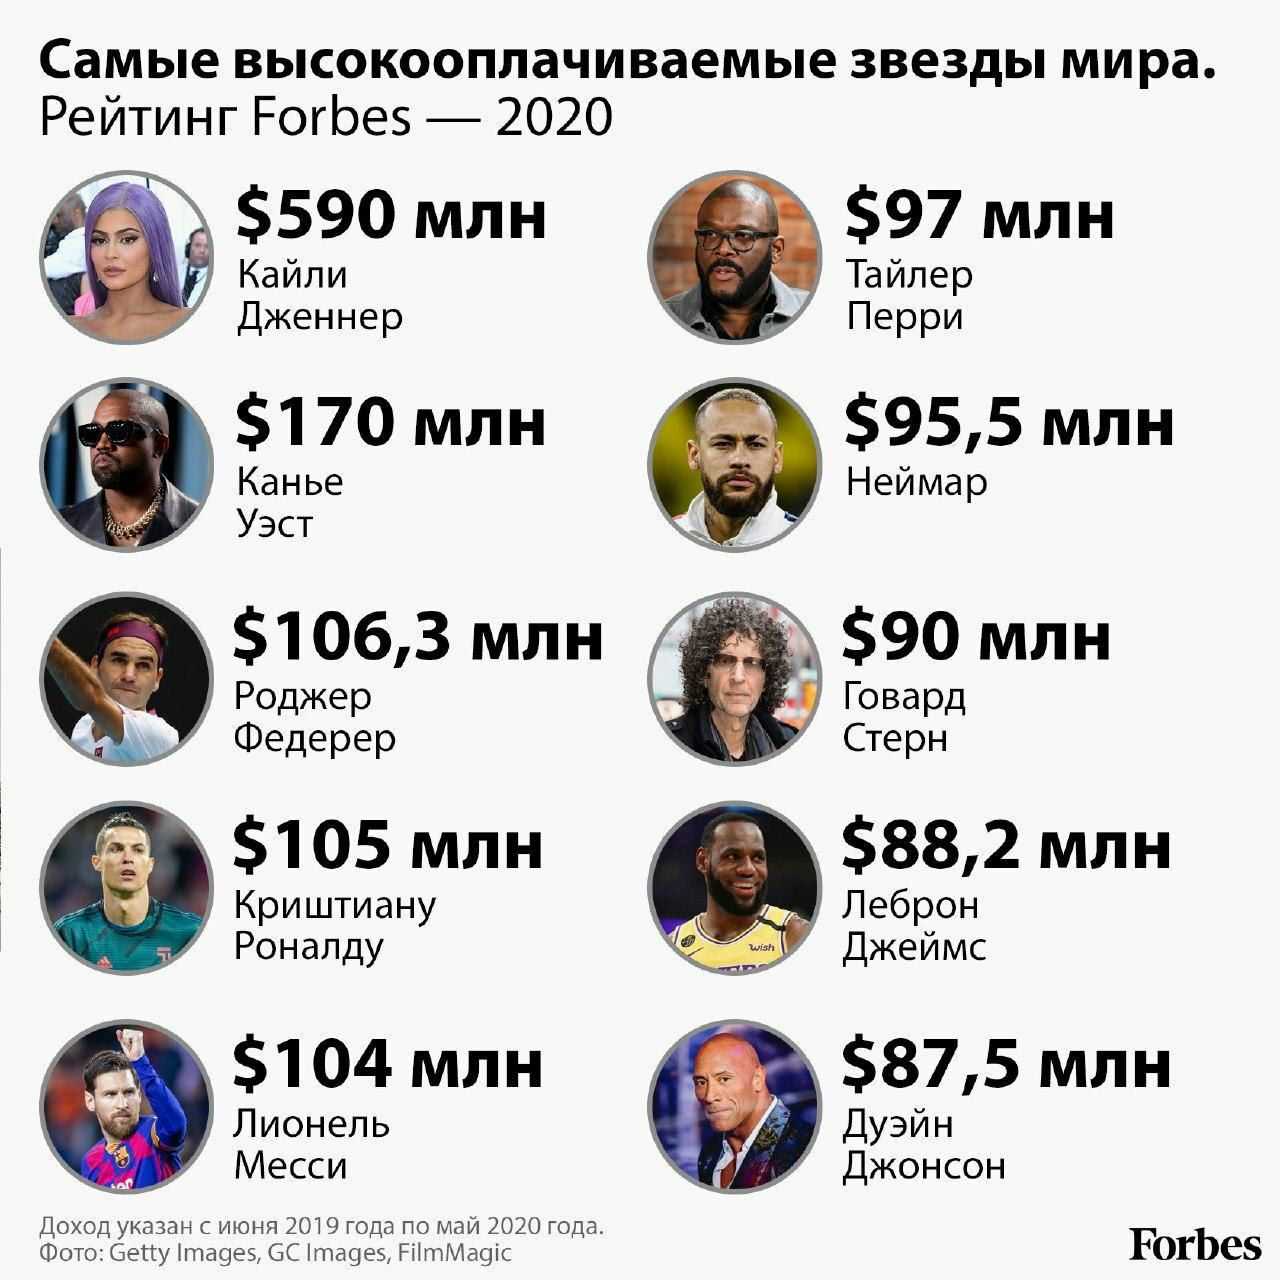 Самые богатые люди мира, россии и за всю историю